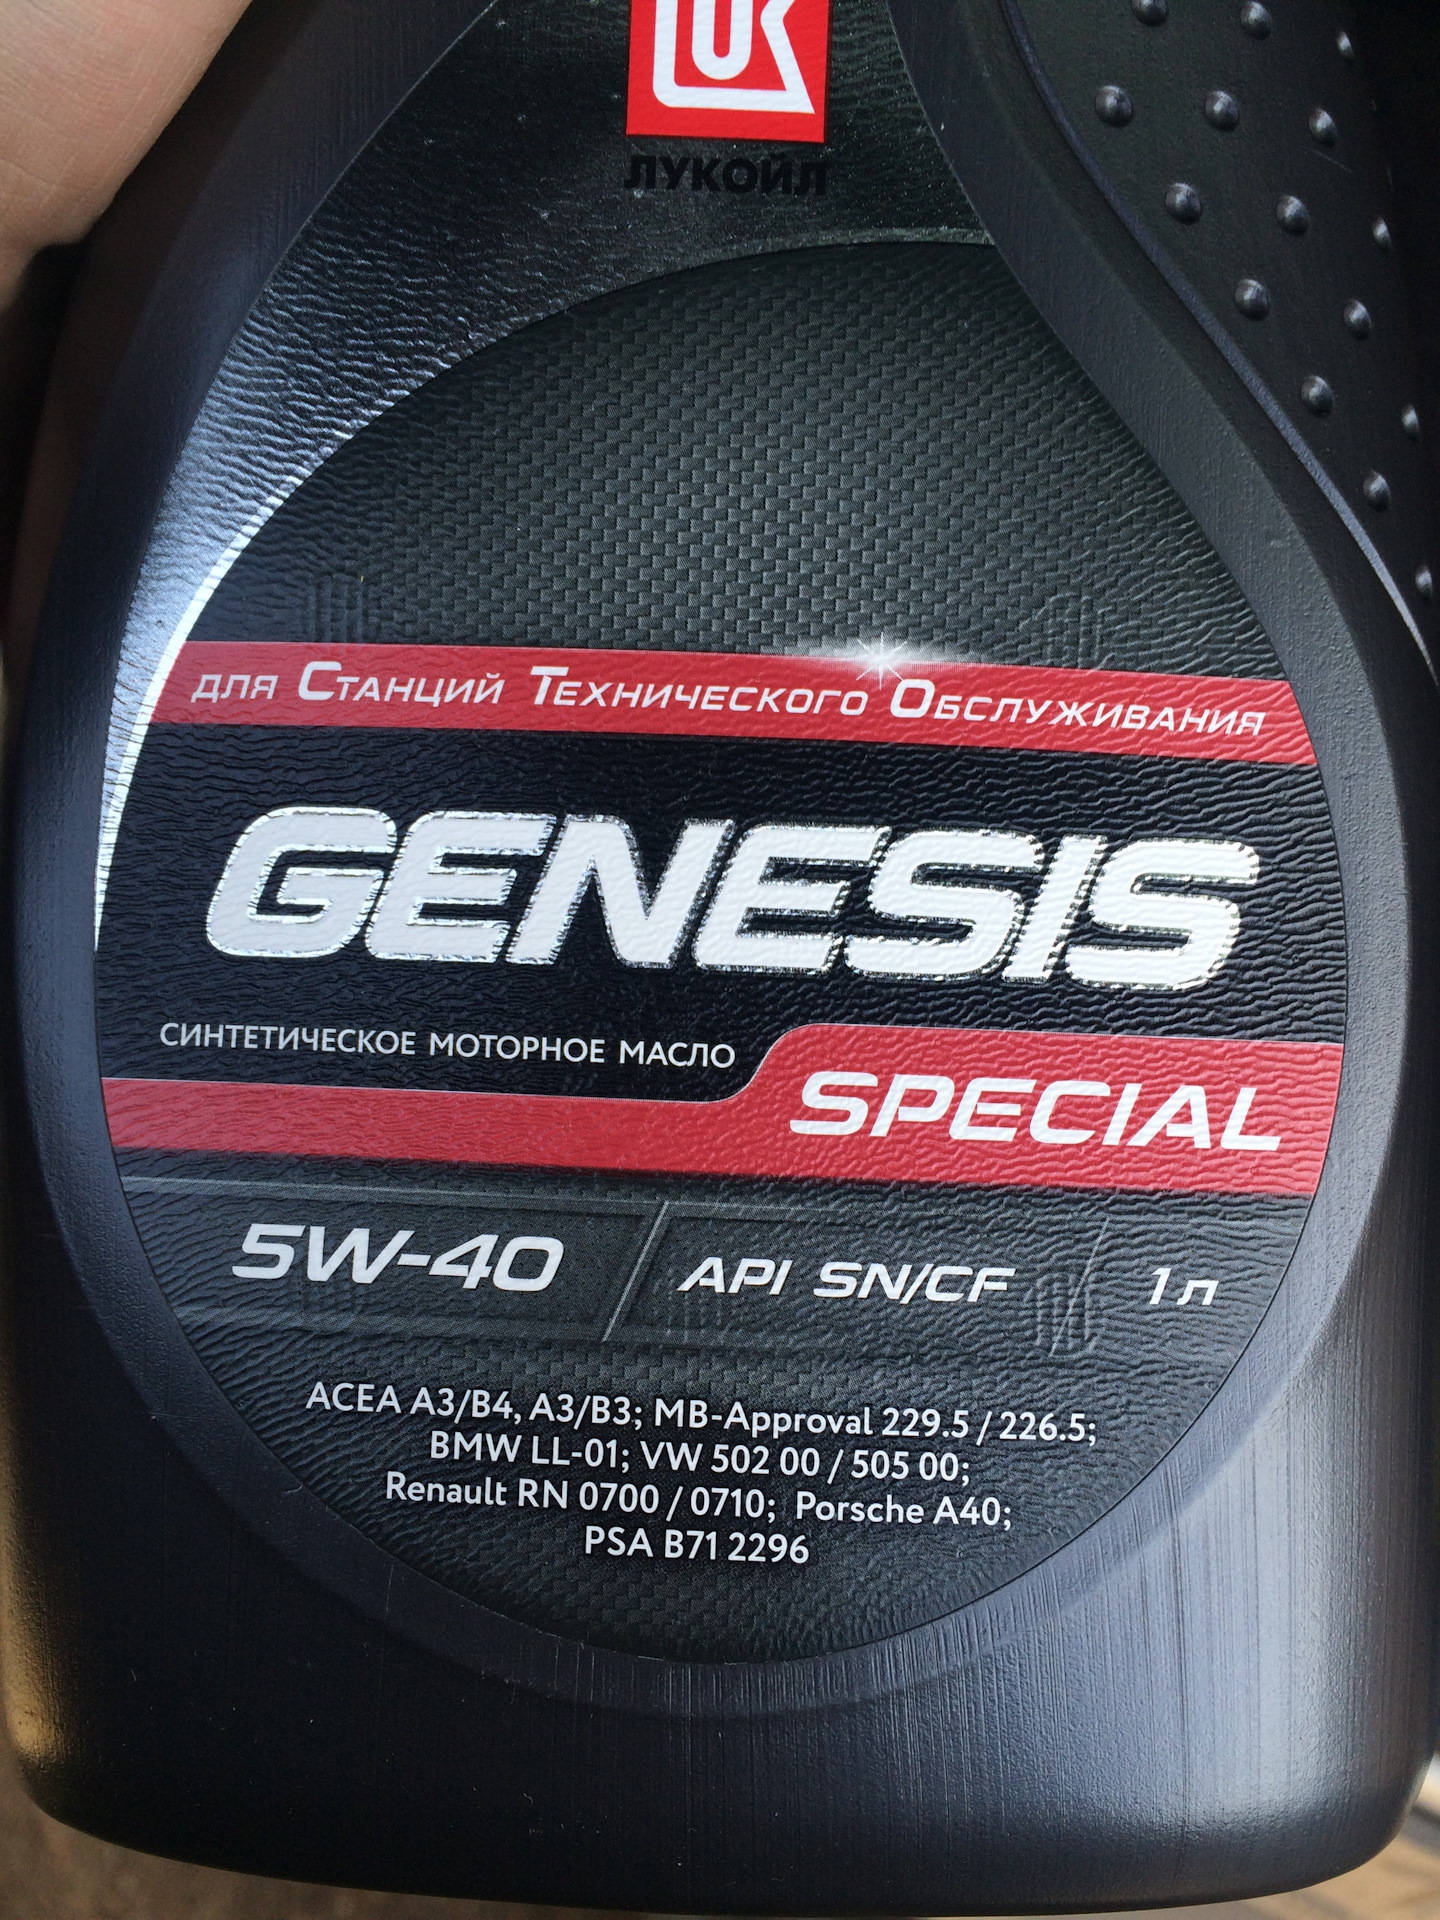 Lukoil genesis special. Genesis Special 5w-40. Лукойл Генезис 5w40 Special. Lukoil Genesis Special 5w-40. Genesis Special Advanced 5w-40.